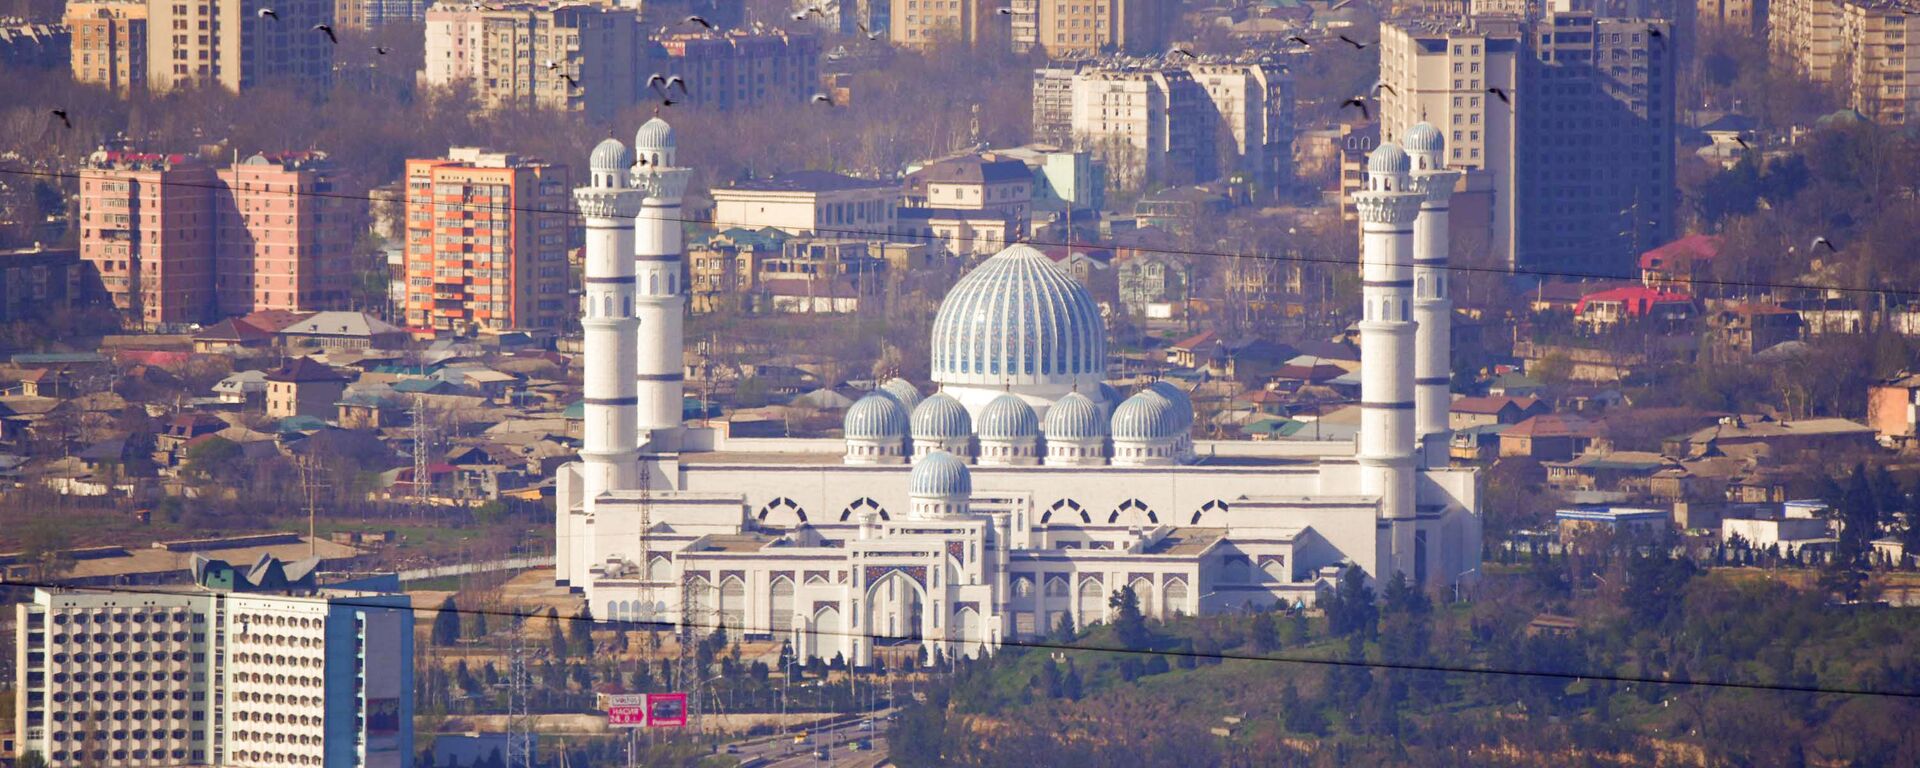 Новая мечеть в Душанбе - Sputnik Таджикистан, 1920, 09.12.2020